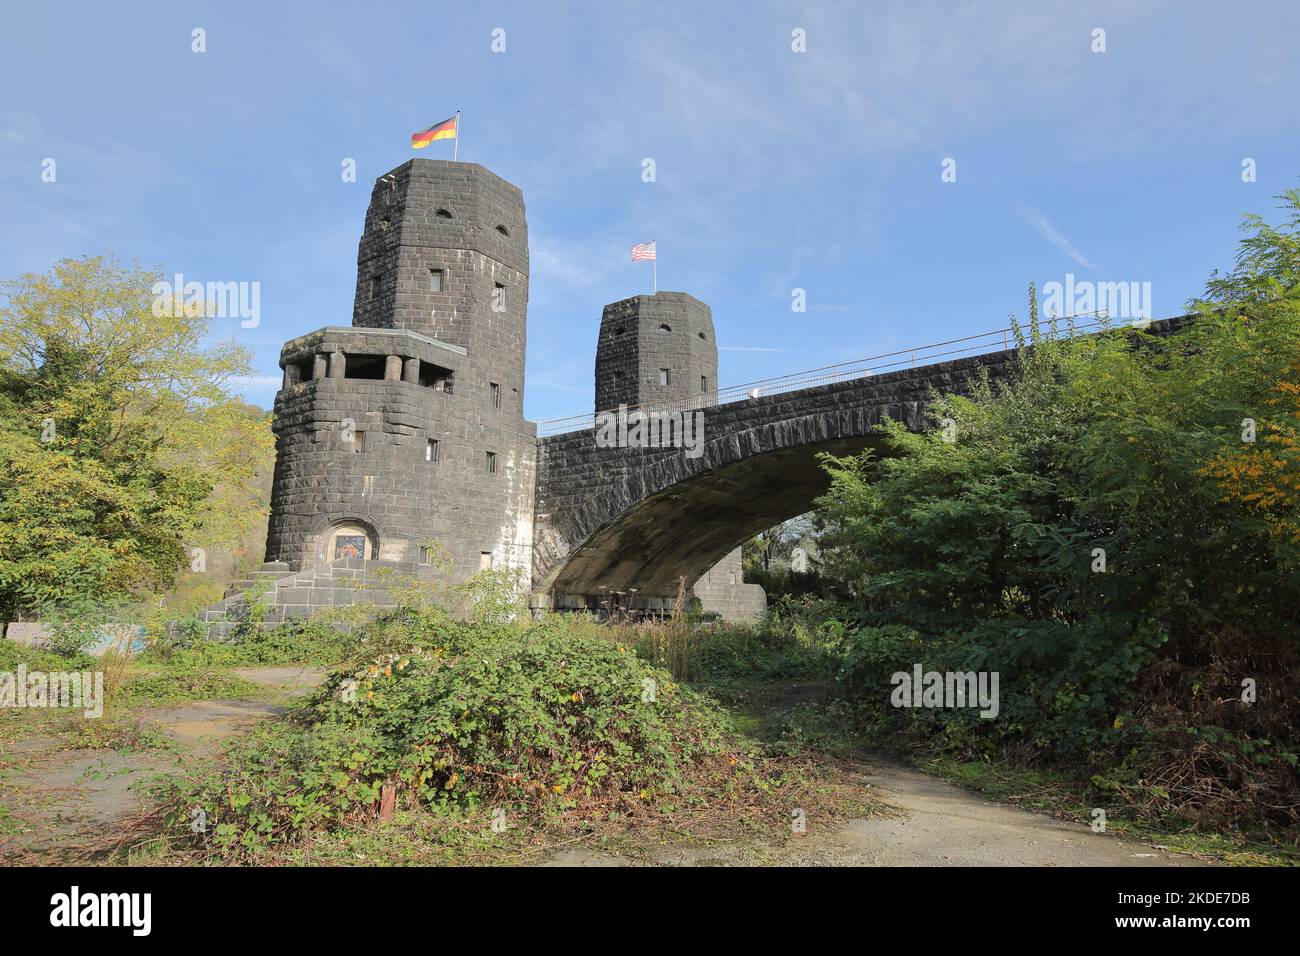 Tête de pont historique du pont Ludendorff à Remagen, Rhénanie-Palatinat, vallée du Haut-Rhin moyen, vallée du Moyen-Rhin, Allemagne Banque D'Images